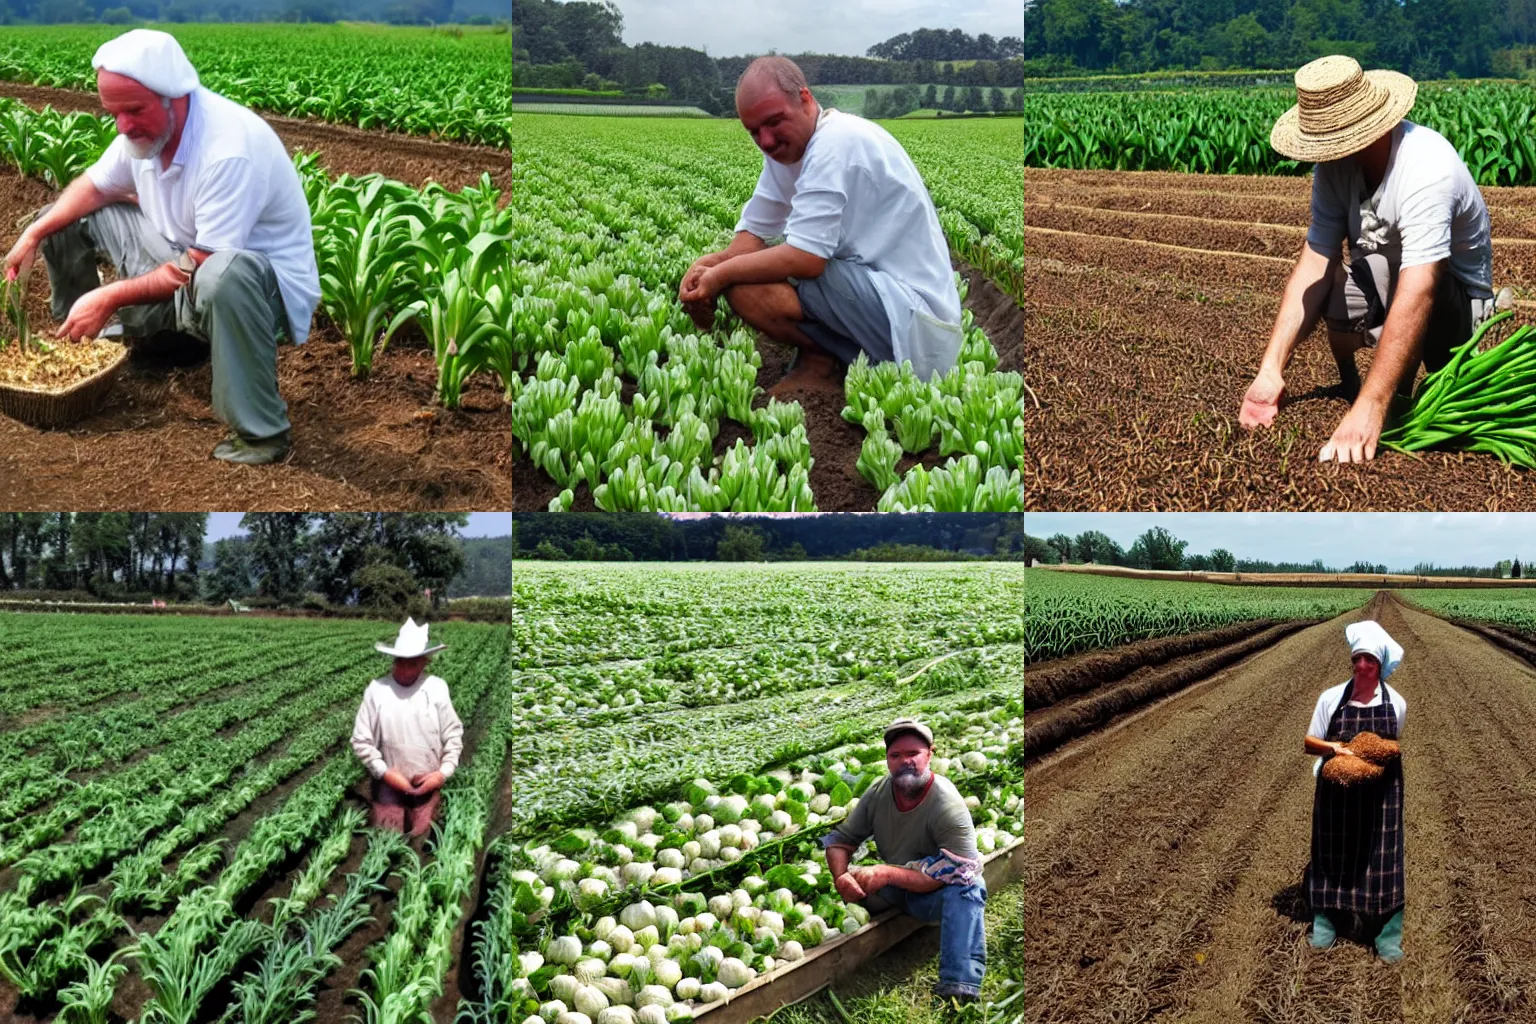 Prompt: A garlic farmer